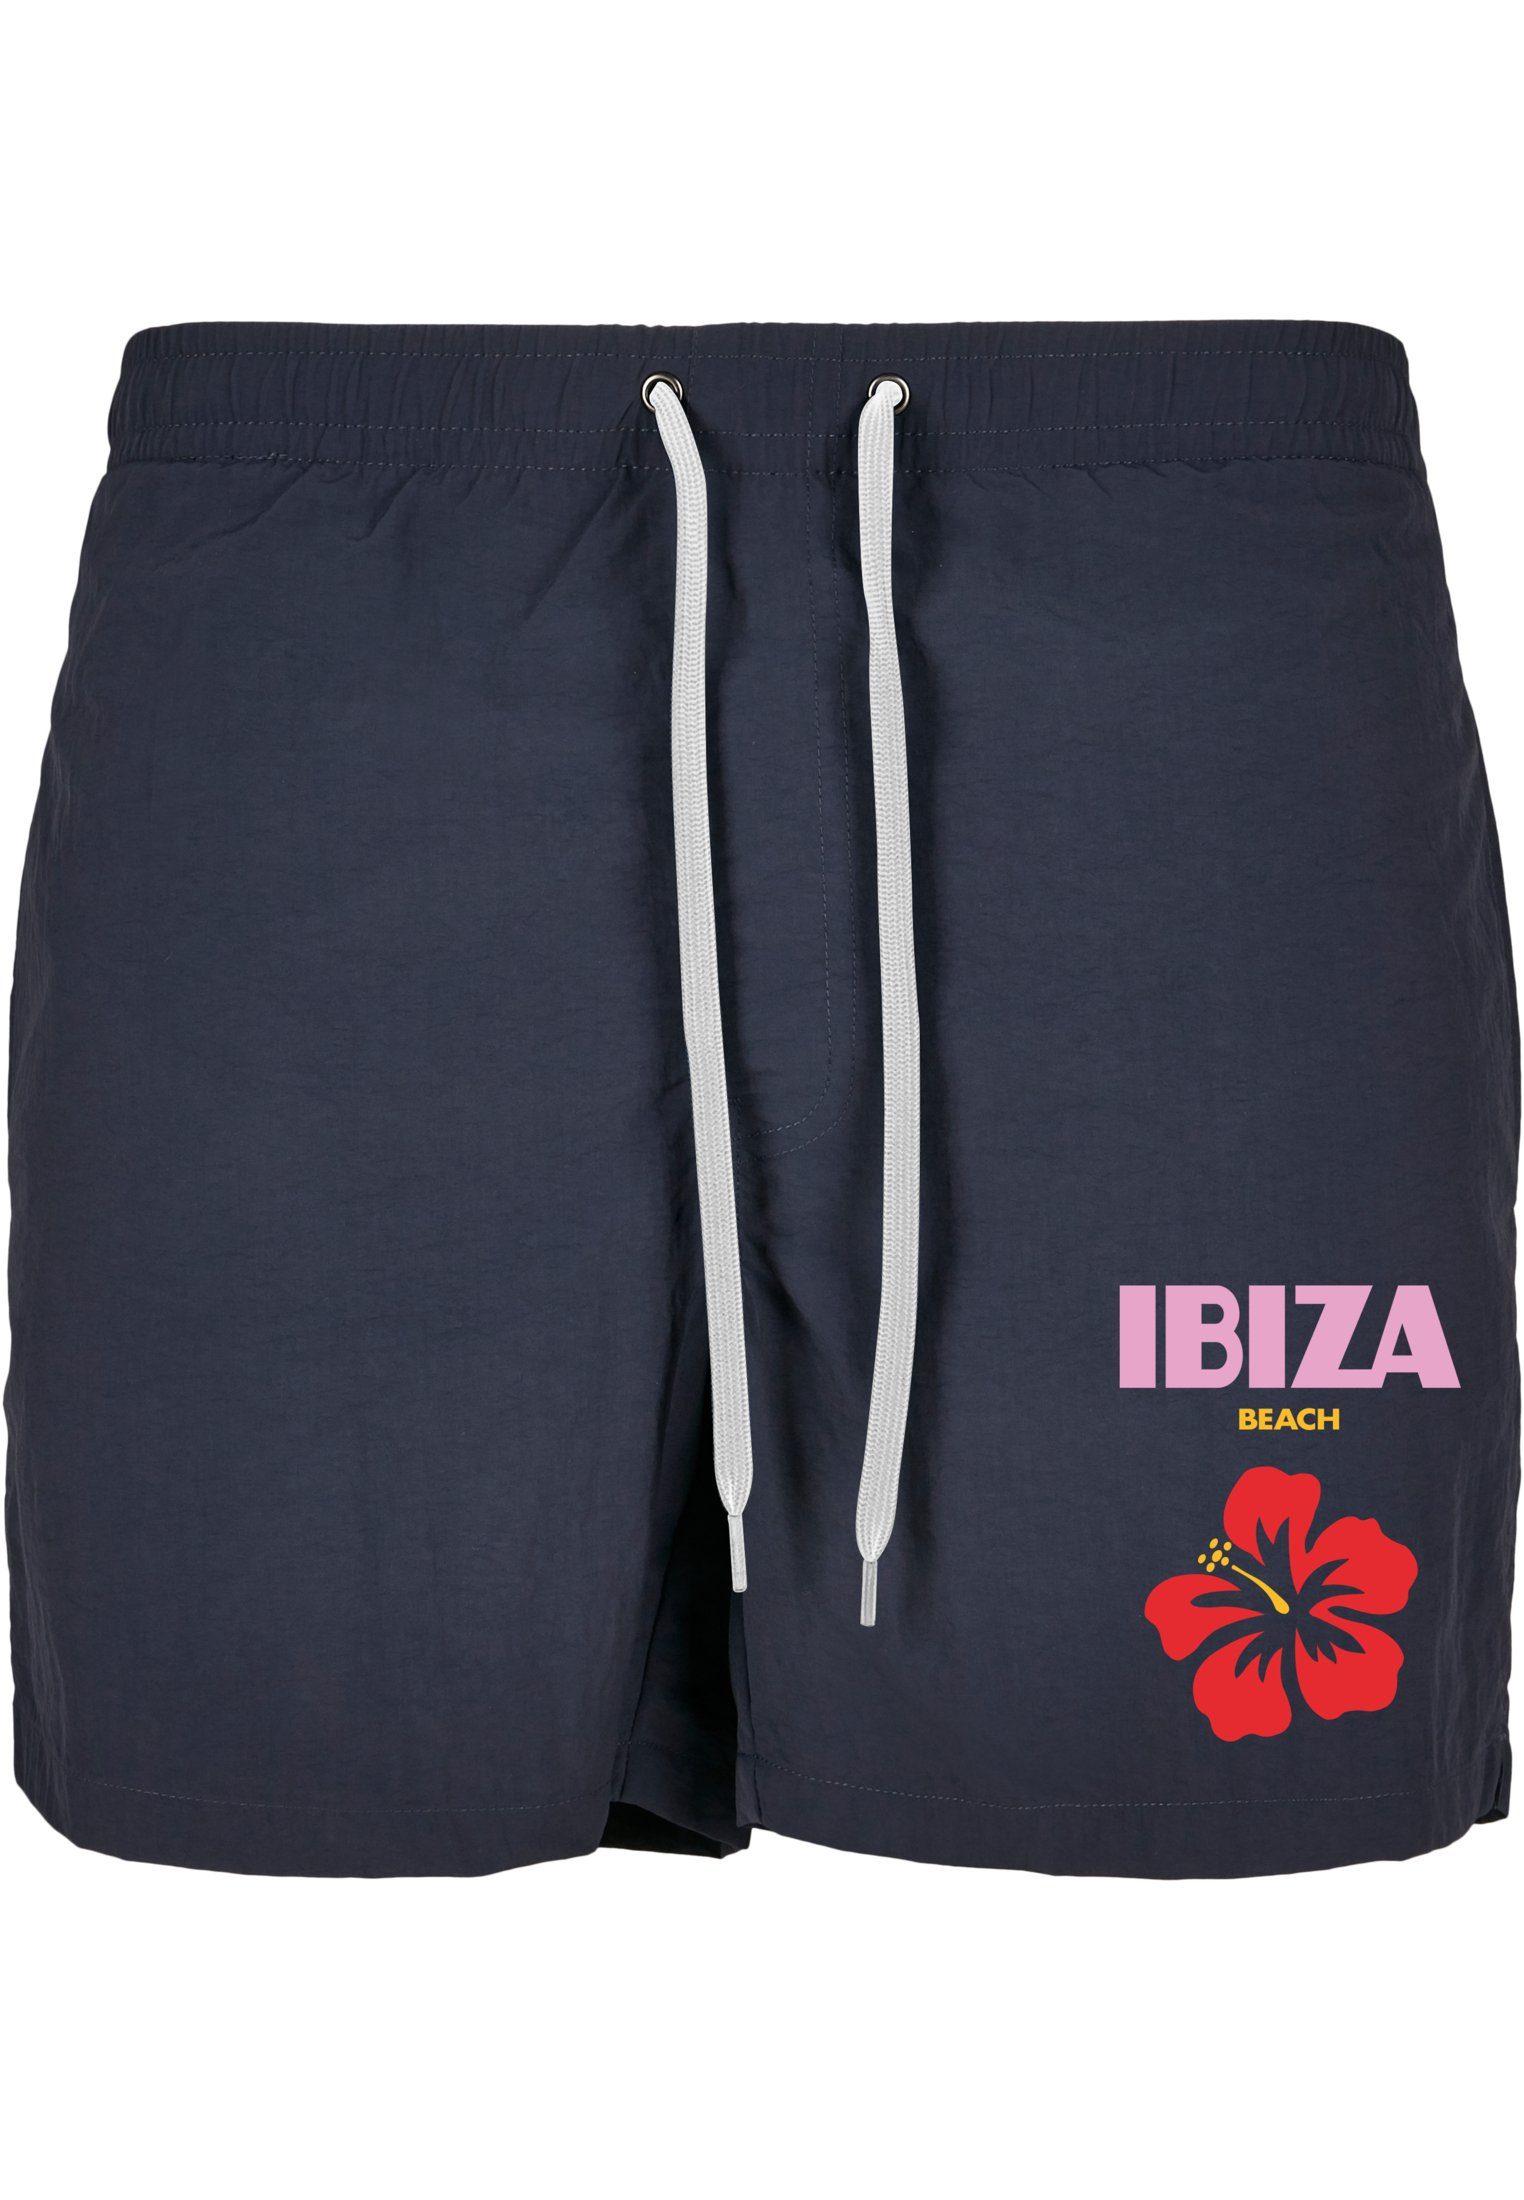 MisterTee Badeshorts Herren Ibiza Beach Swimshorts